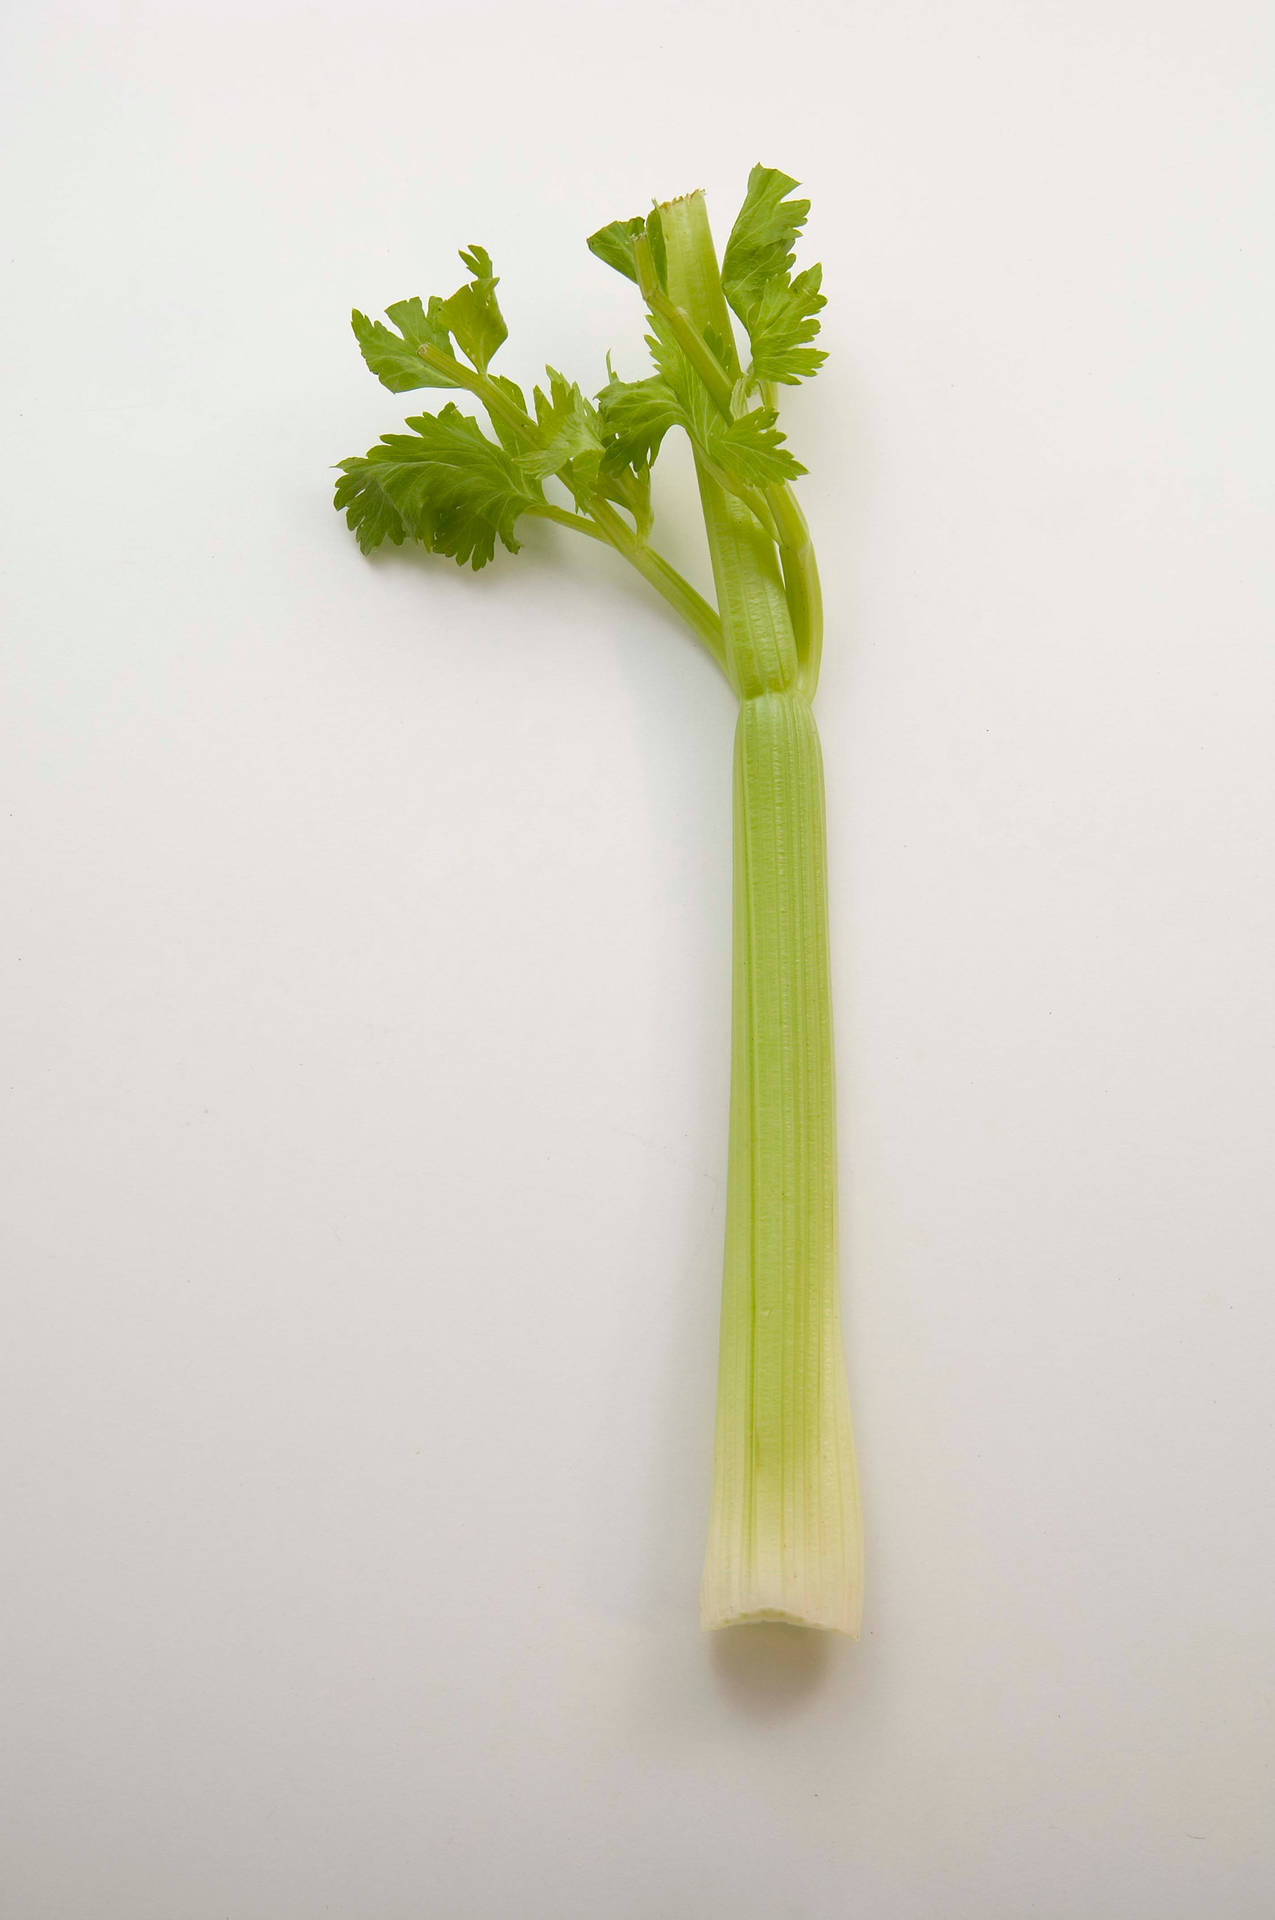 Cute Waving Celery Stalk Wallpaper